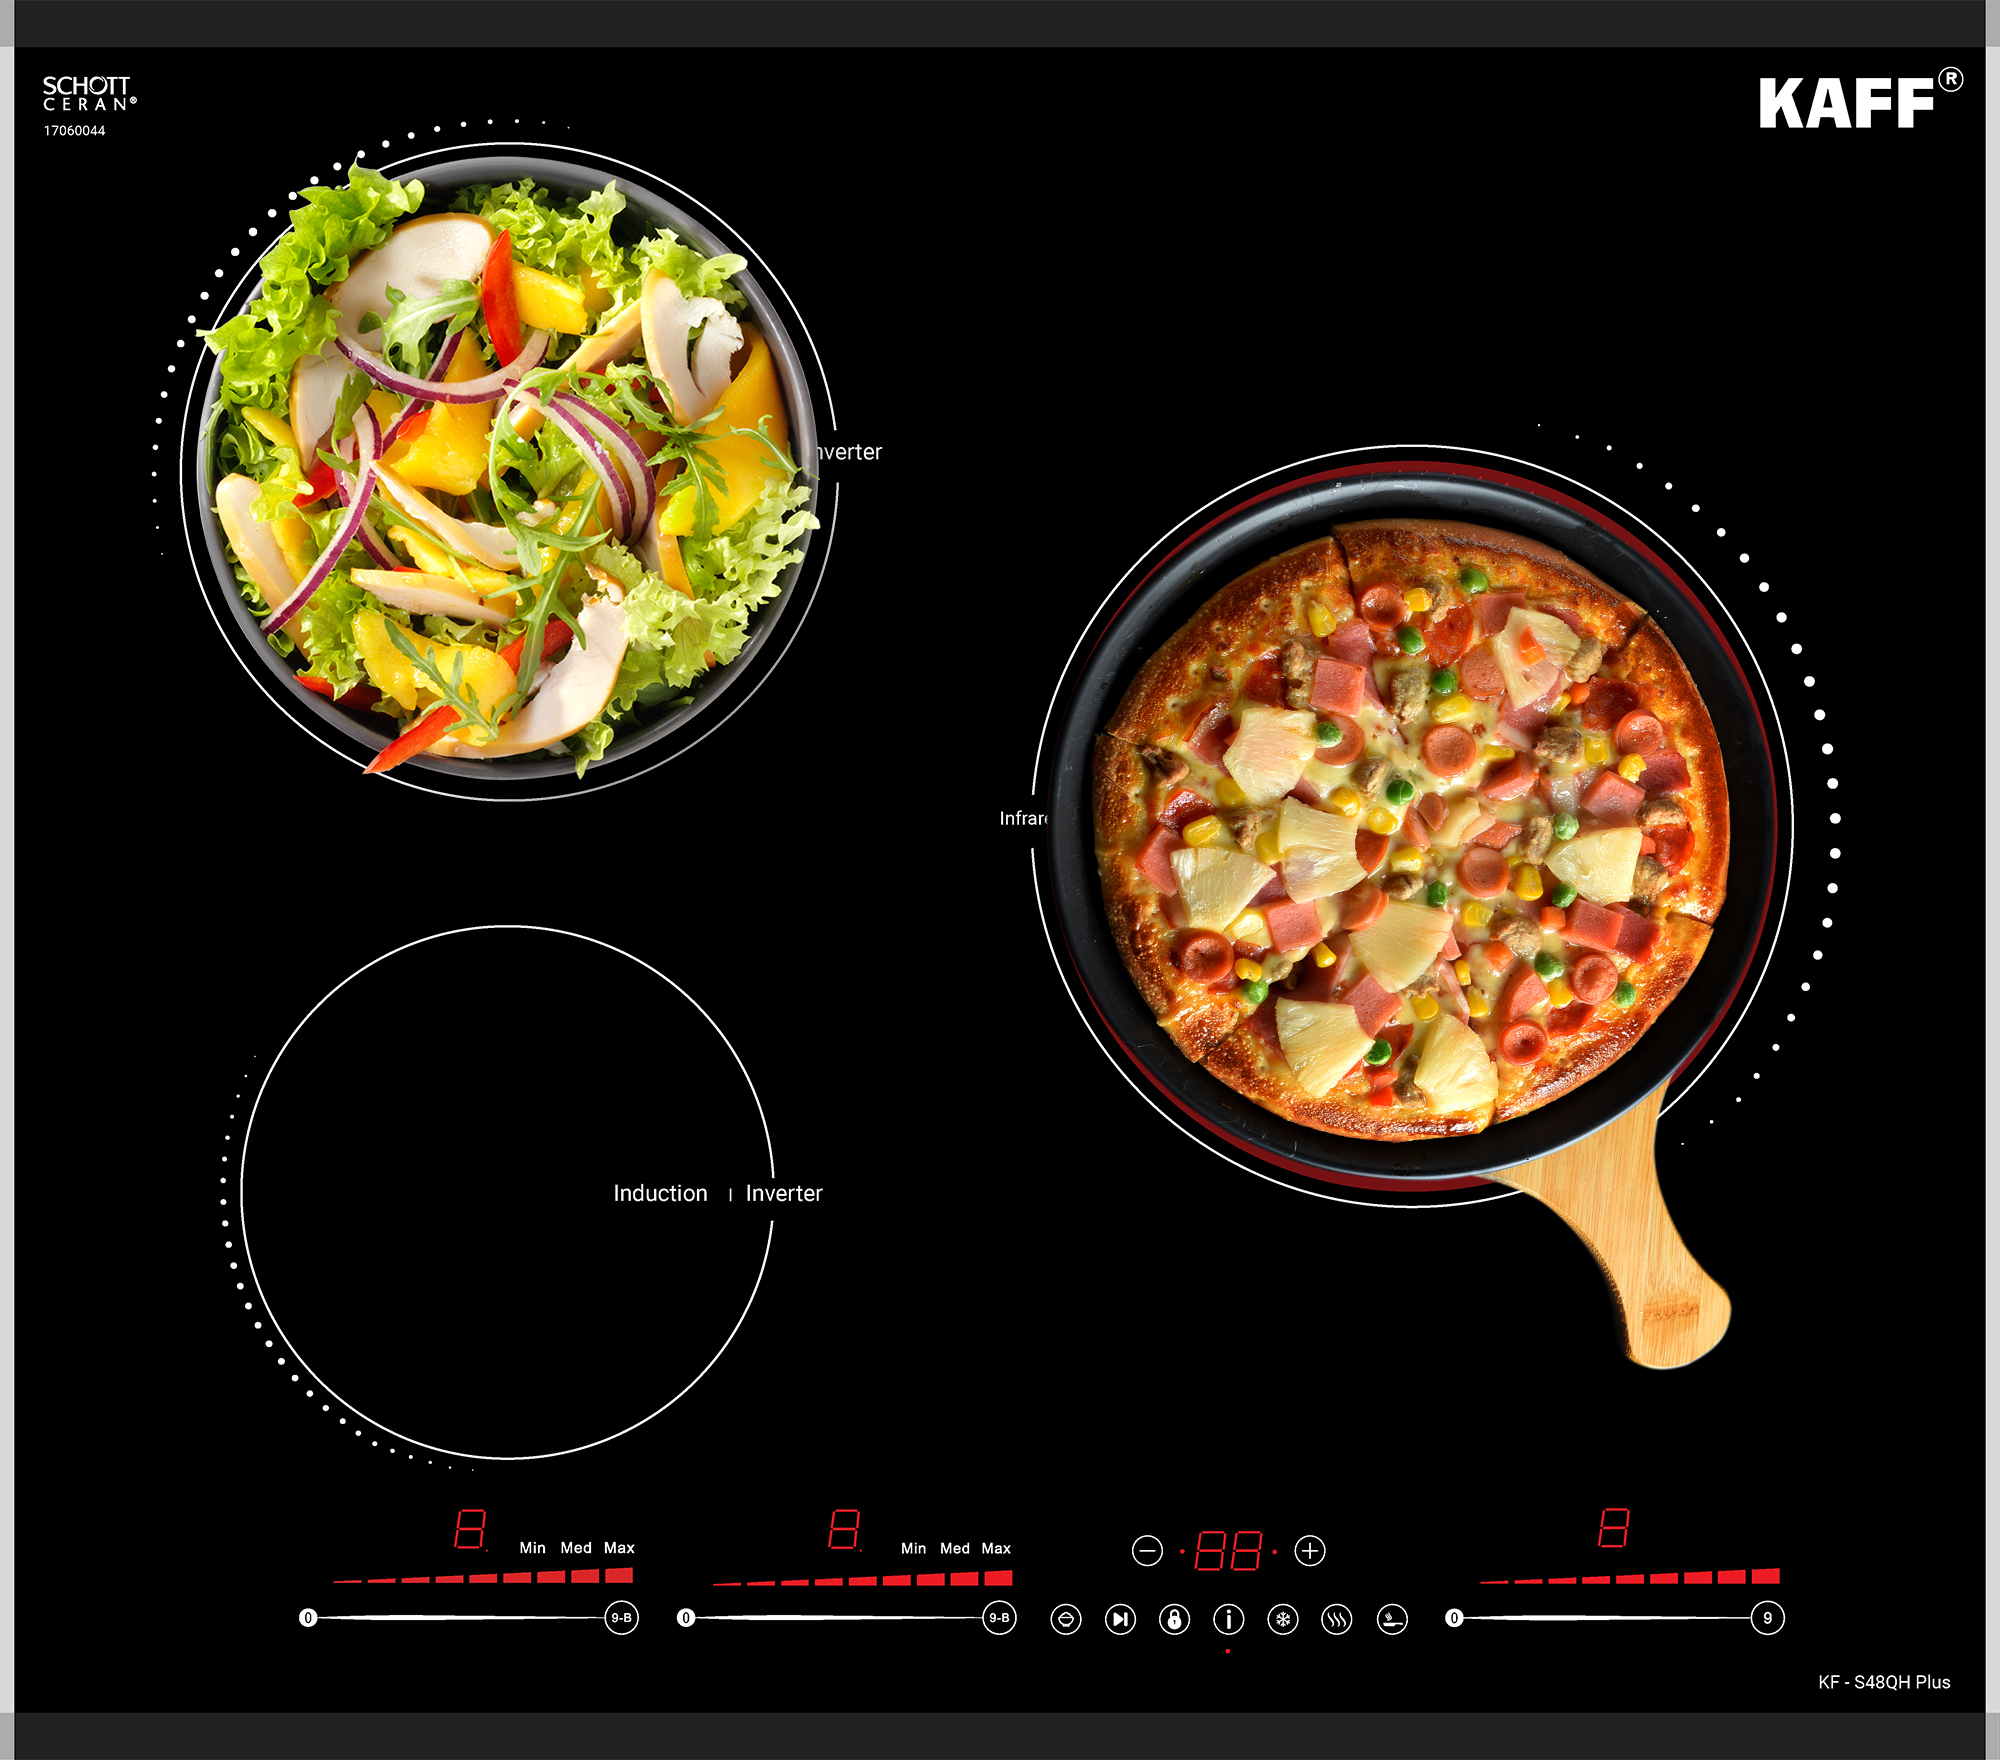 Bếp điện từ Kaff KF-S48QH Plus thiết kế bảng điều khiển dạng Slider Control cùng các tiện ích được cài đặt sẵn. Siêu nhạy, dễ dàng sử dụng và phù hợp với nhiều lứa tuổi